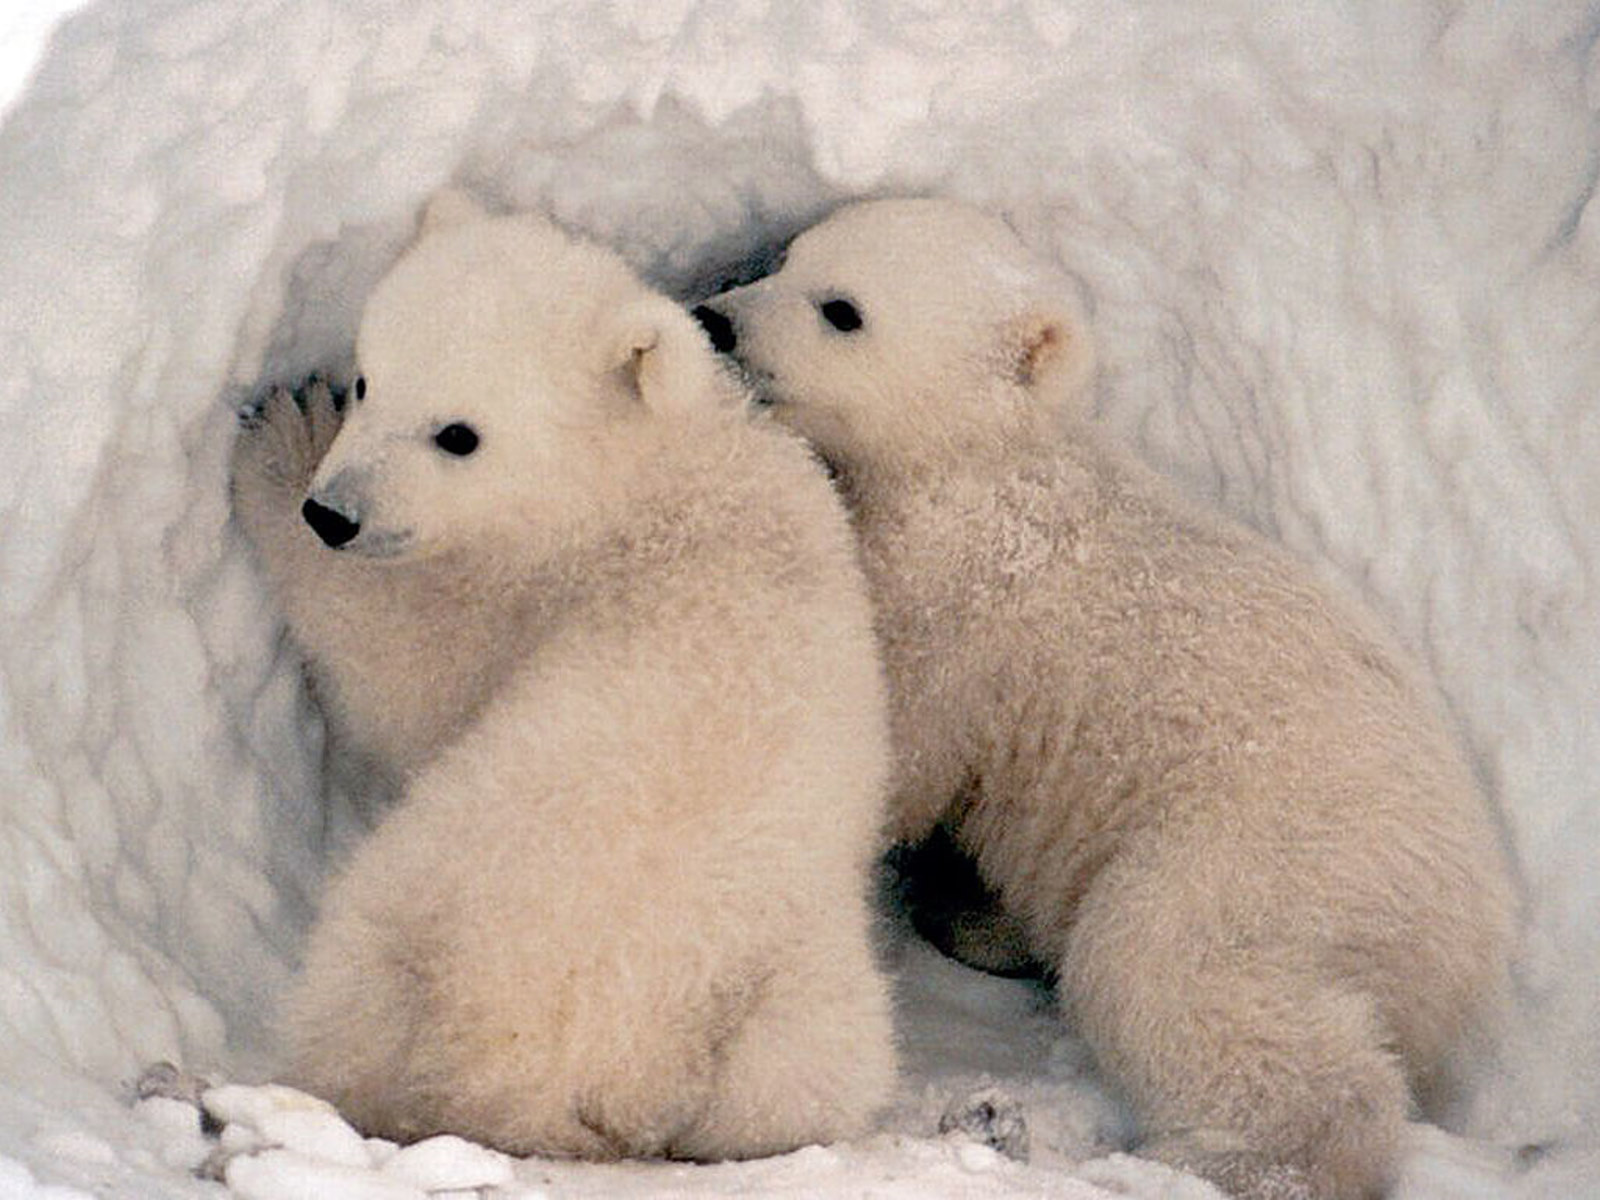 polar bears are cute